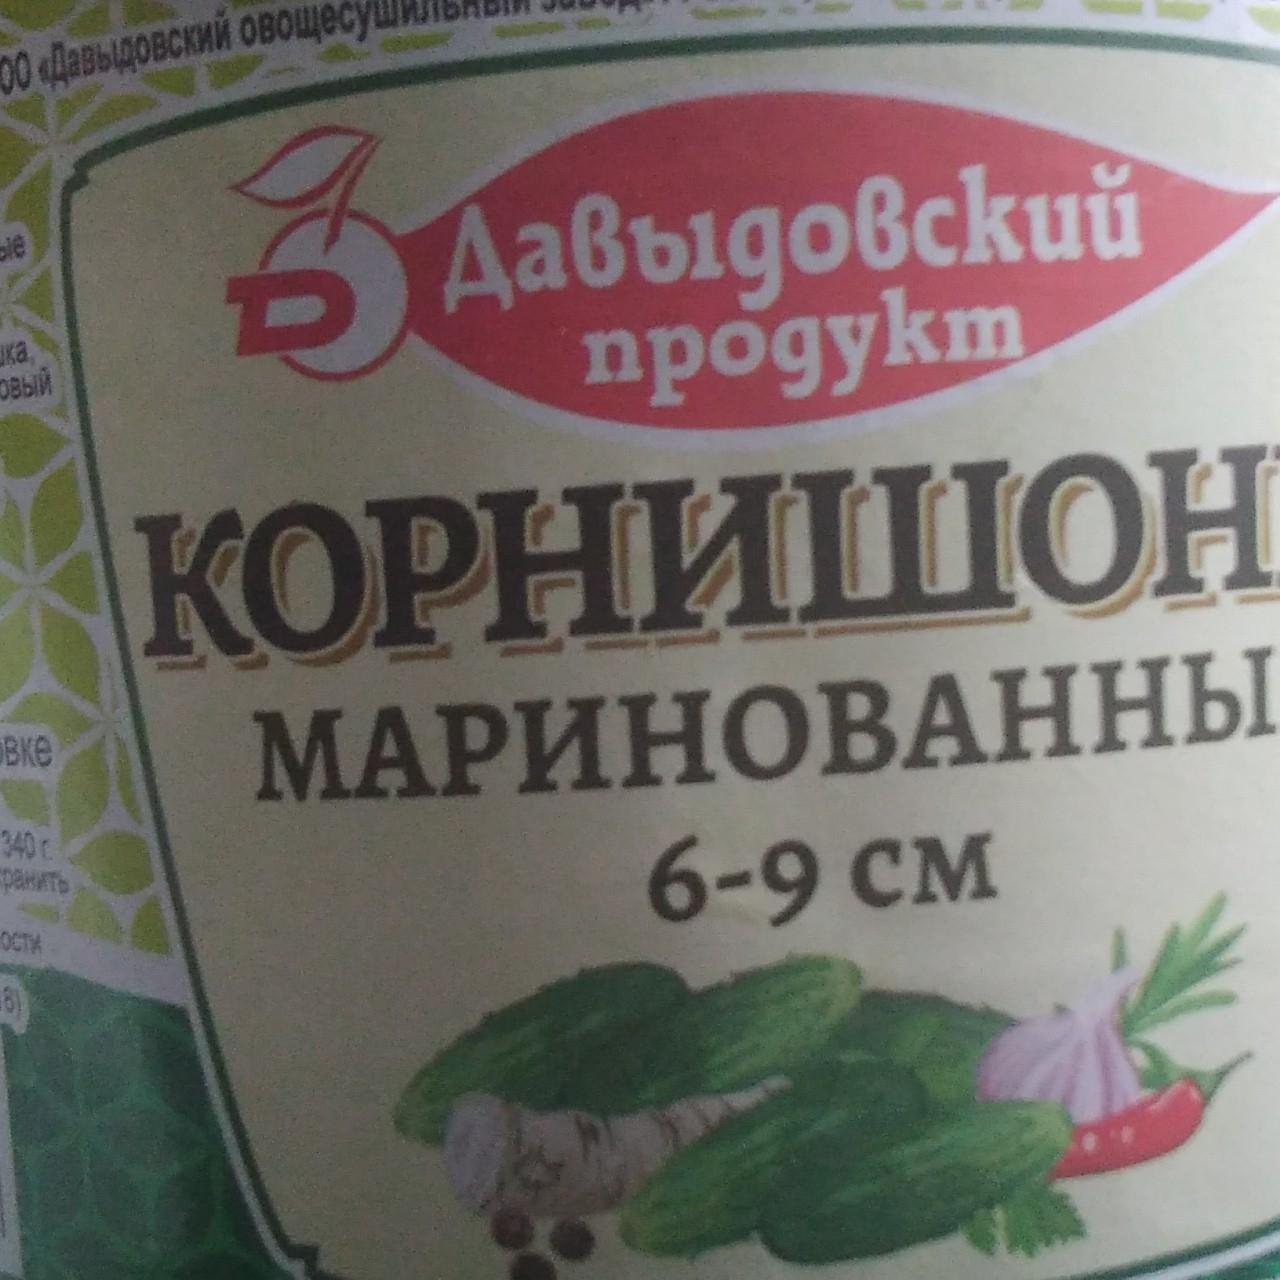 Фото - Корнишоны маринованные 6-9 см Давыдовский продукт